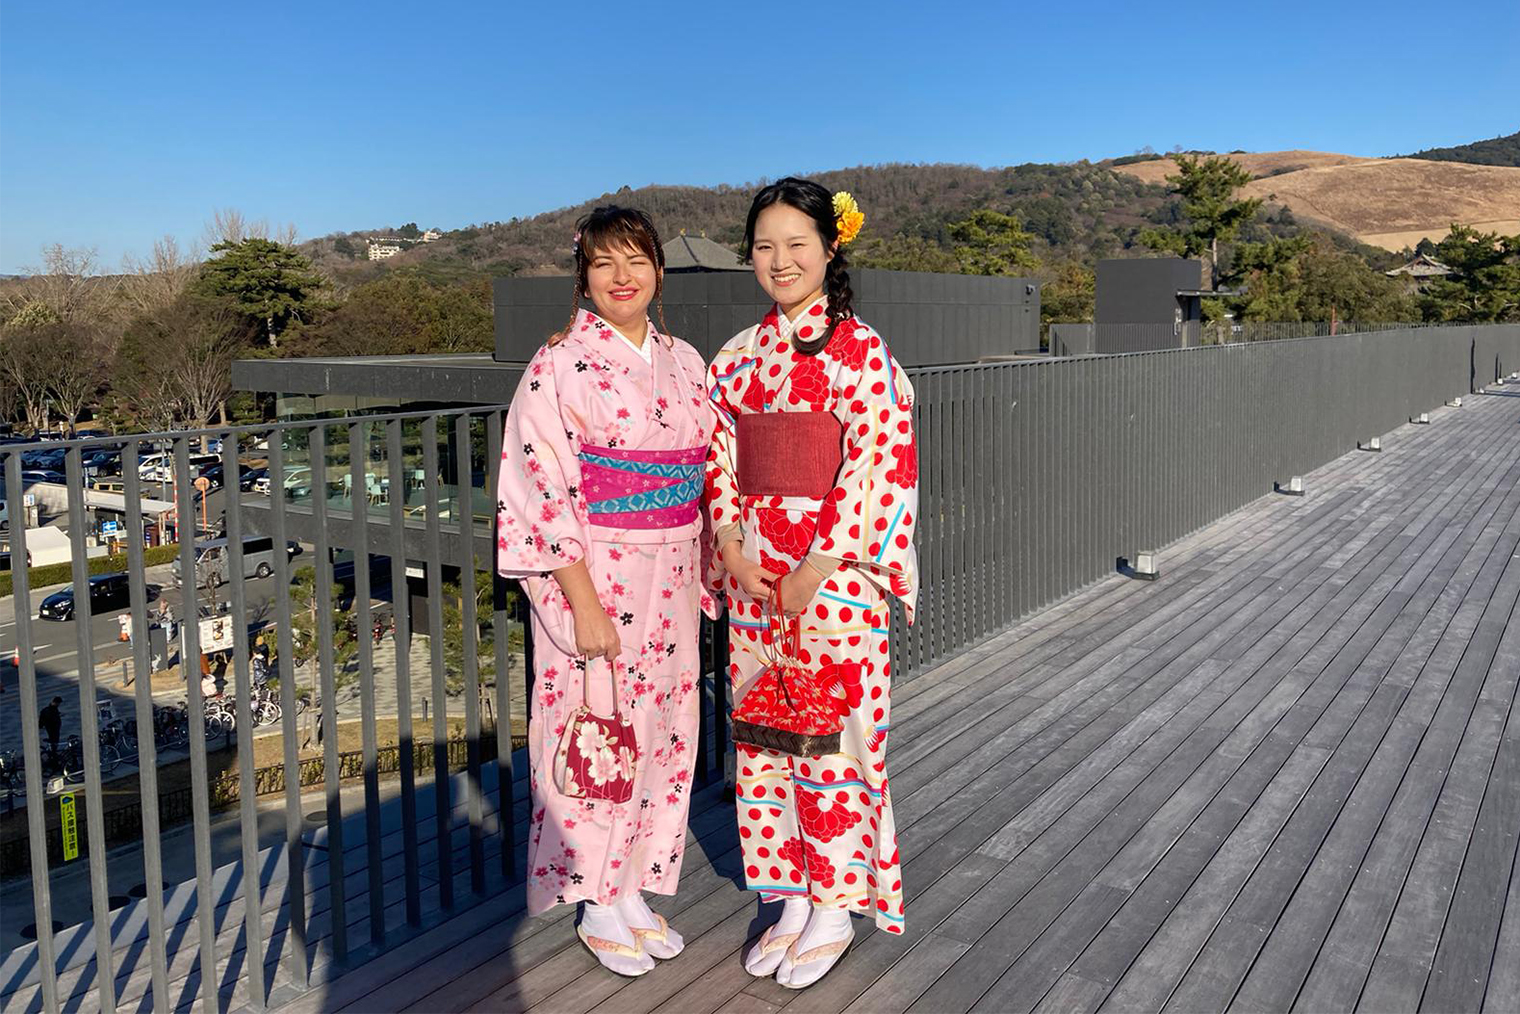 Прогулка по парку в Наре в традиционных кимоно